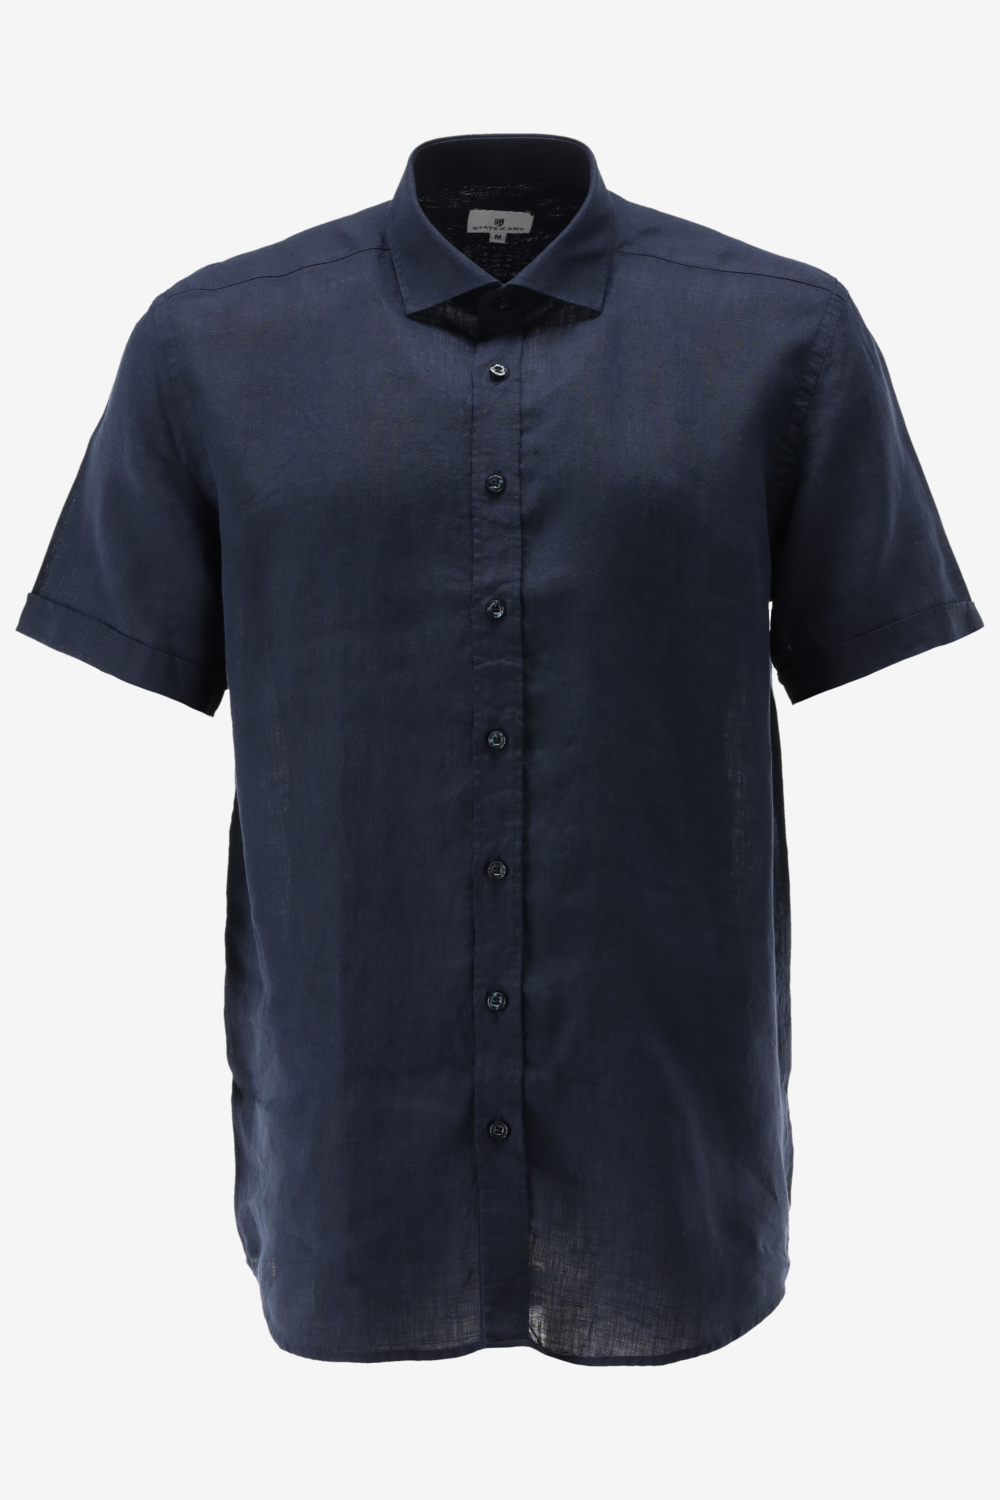 State of Art - Short Sleeve Overhemd Linnen Navy - Maat 3XL - Regular-fit